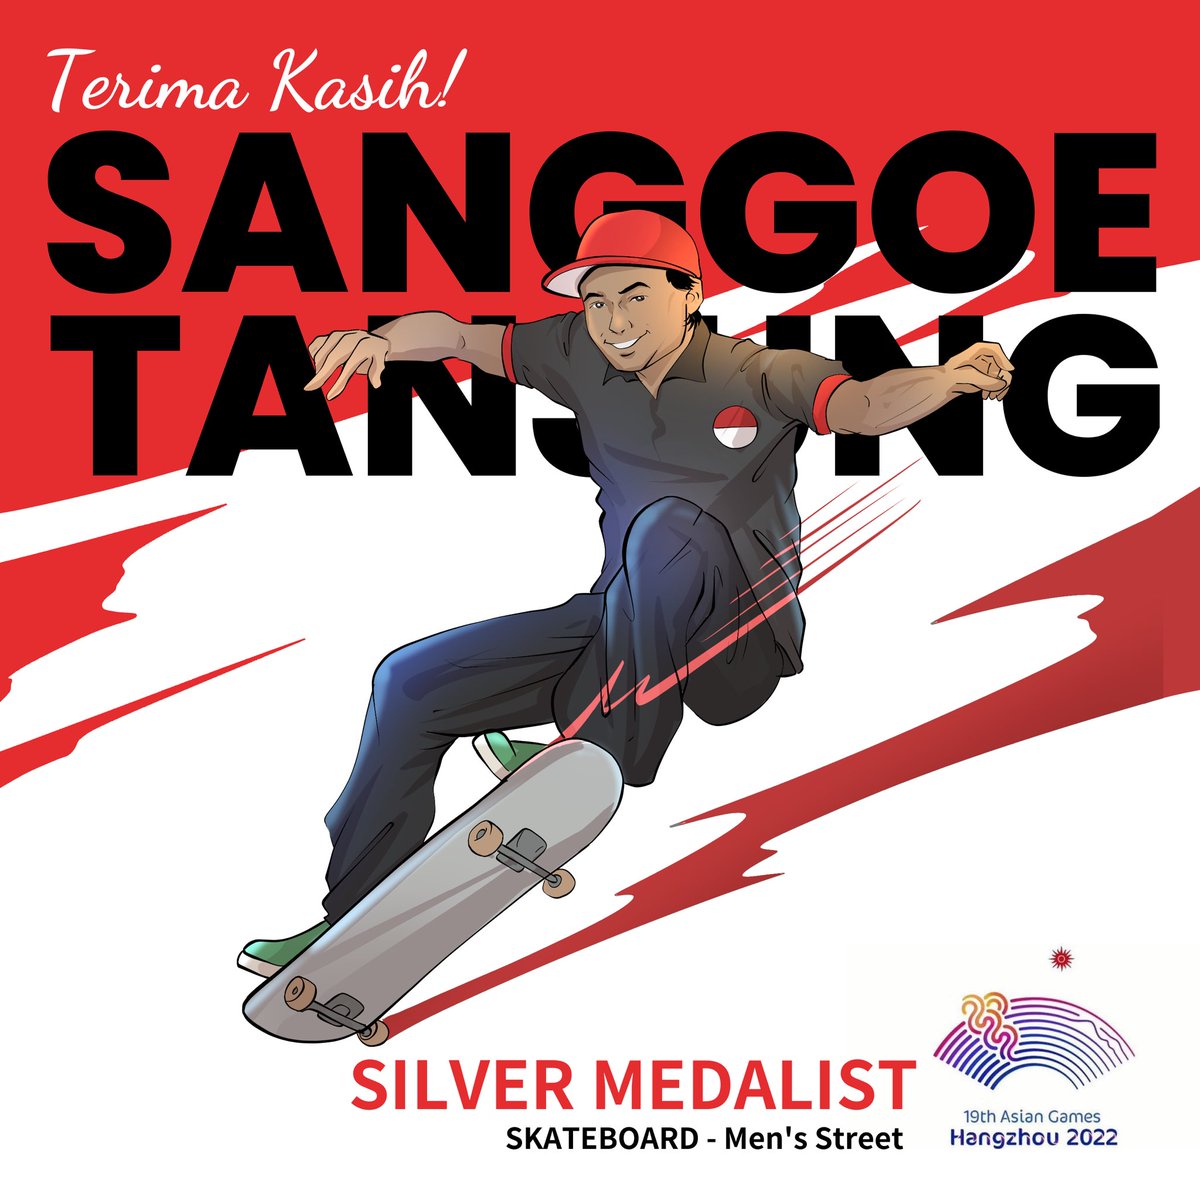 Terima Kasih Sanggoe Dharma Tanjung!

Medali perak cabor skateboard nomor Men’s Street Asian Games.

#AsianGames 
#IndonesiaJuara
#BreakingNews
#Skateboard